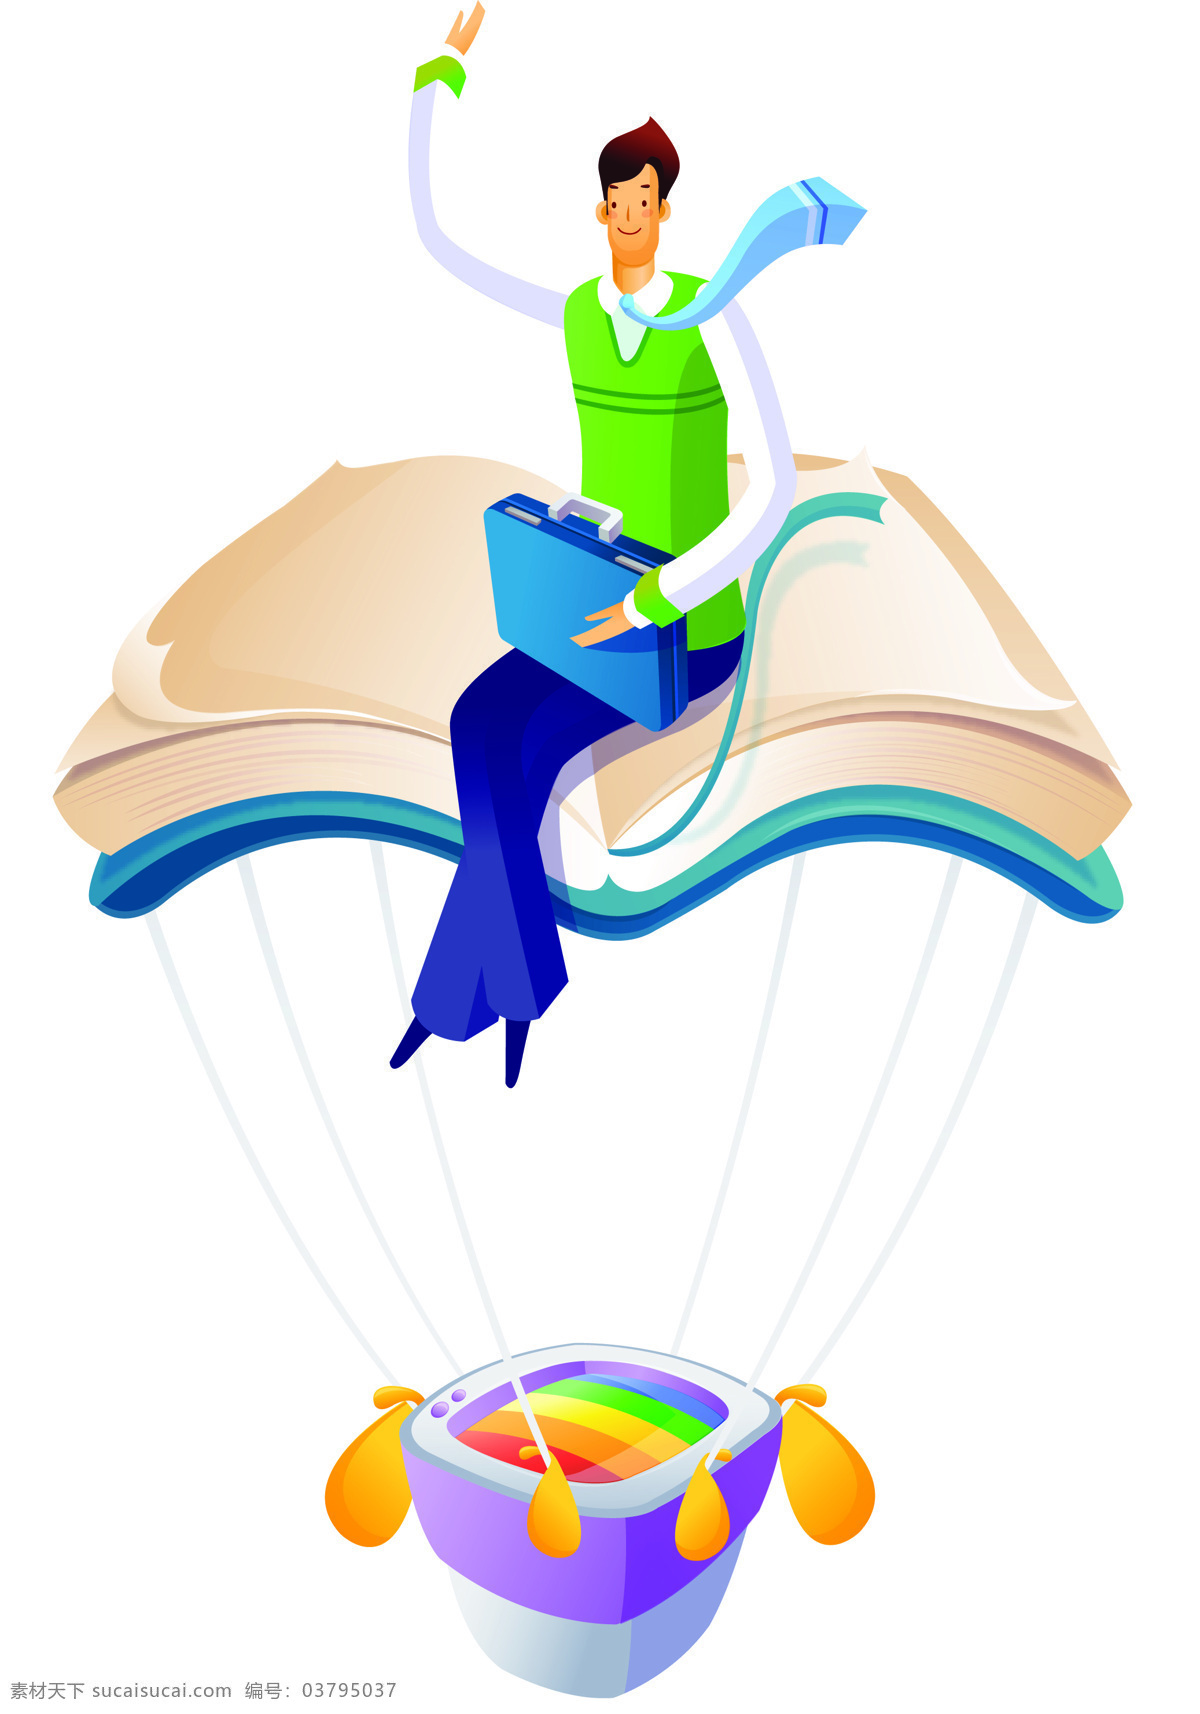 商务 人士 插画 卡通 韩国插画 商务人士 商业插画 科技 未来 畅想 人物 男性 书籍 热气球 知识 其他类别 商务金融